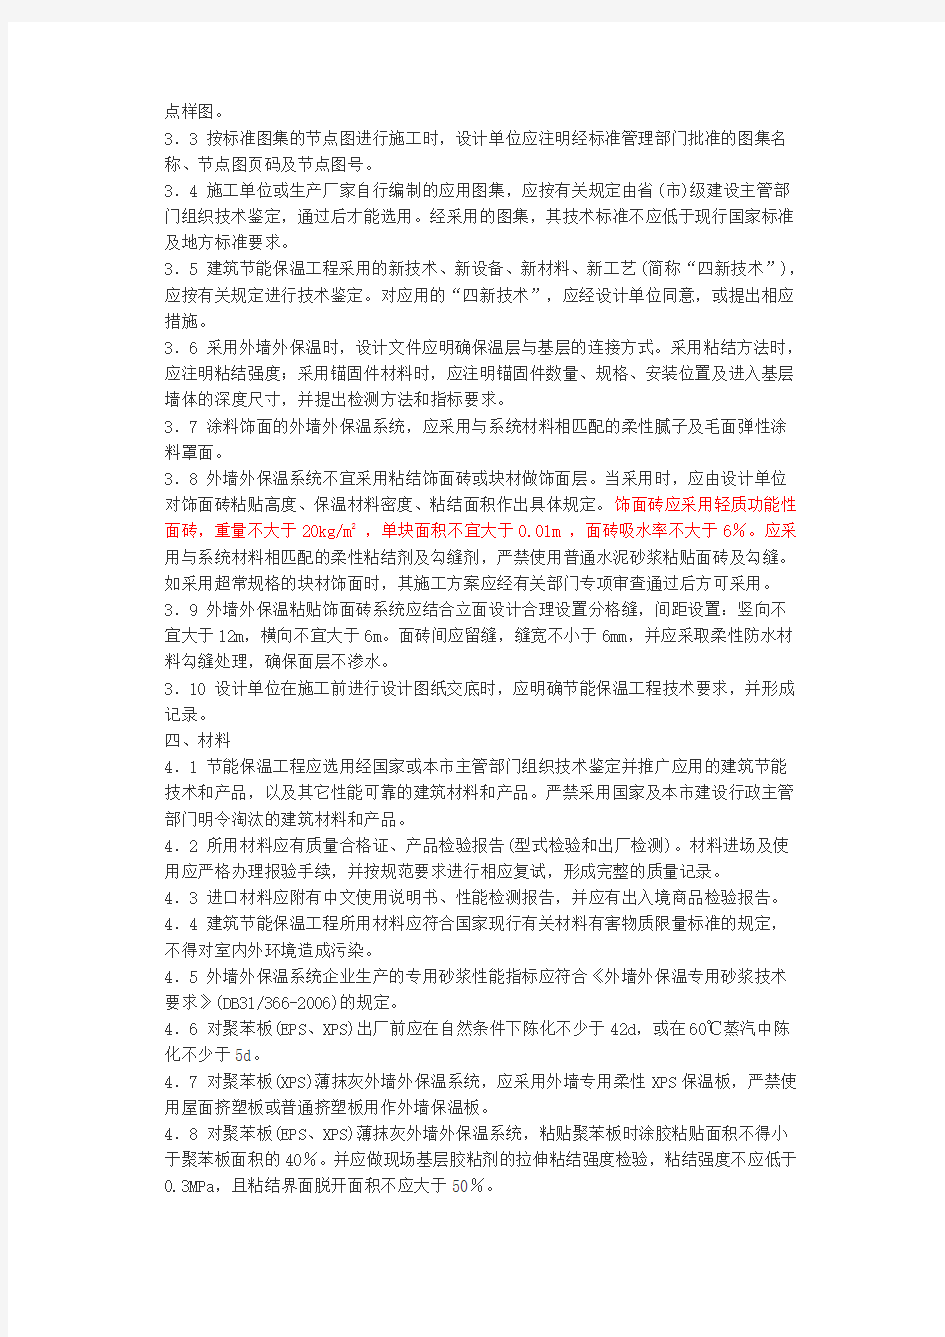 上海民用建筑外墙保温工程应用导则